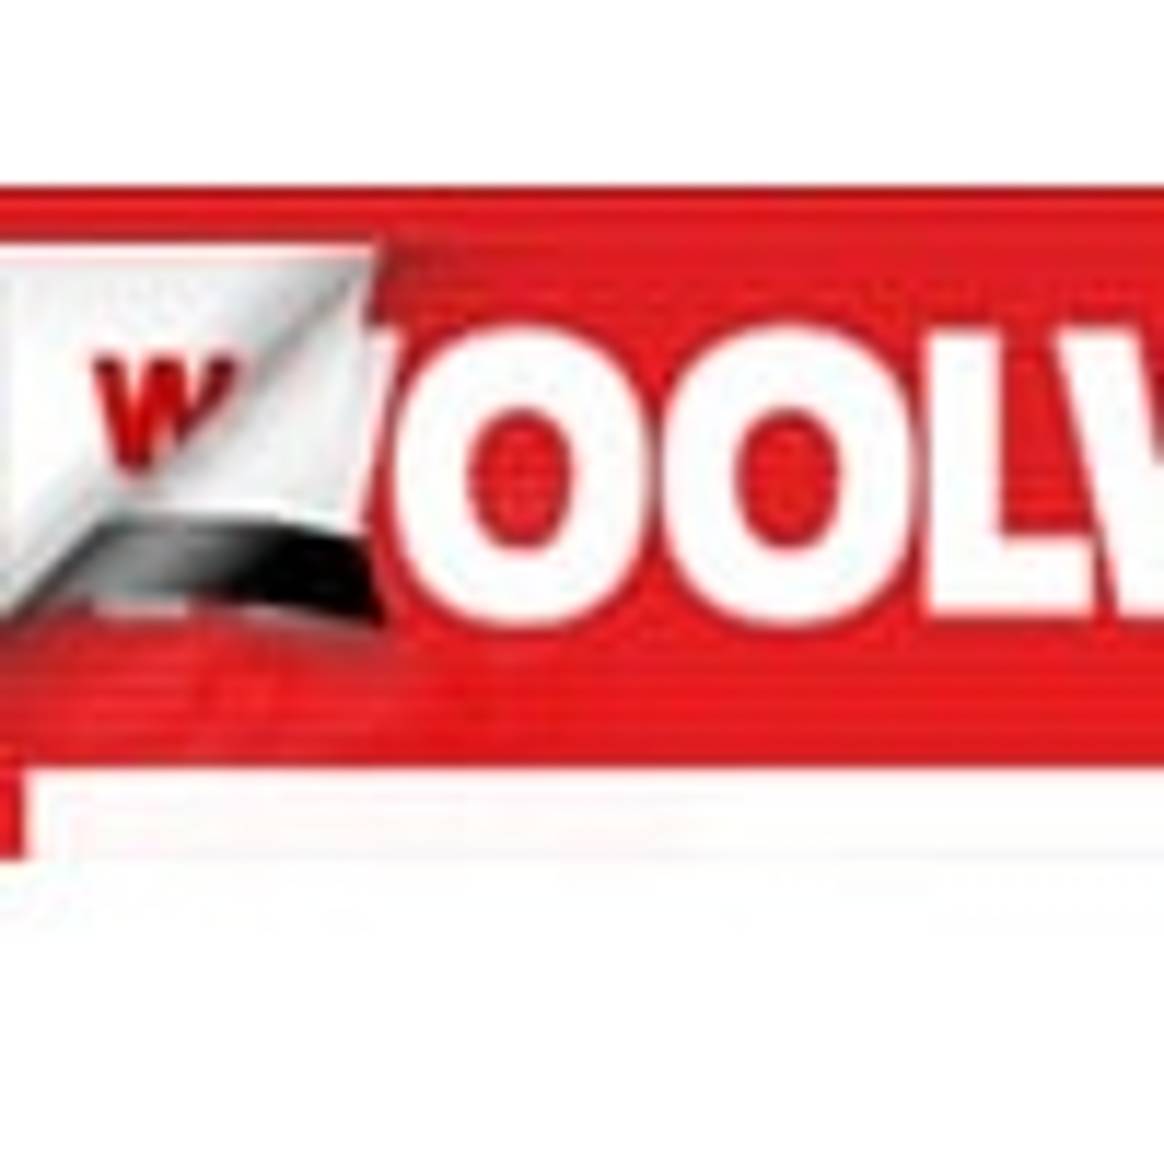 Woolworth wechselt erwartungsgemäß den Besitzer